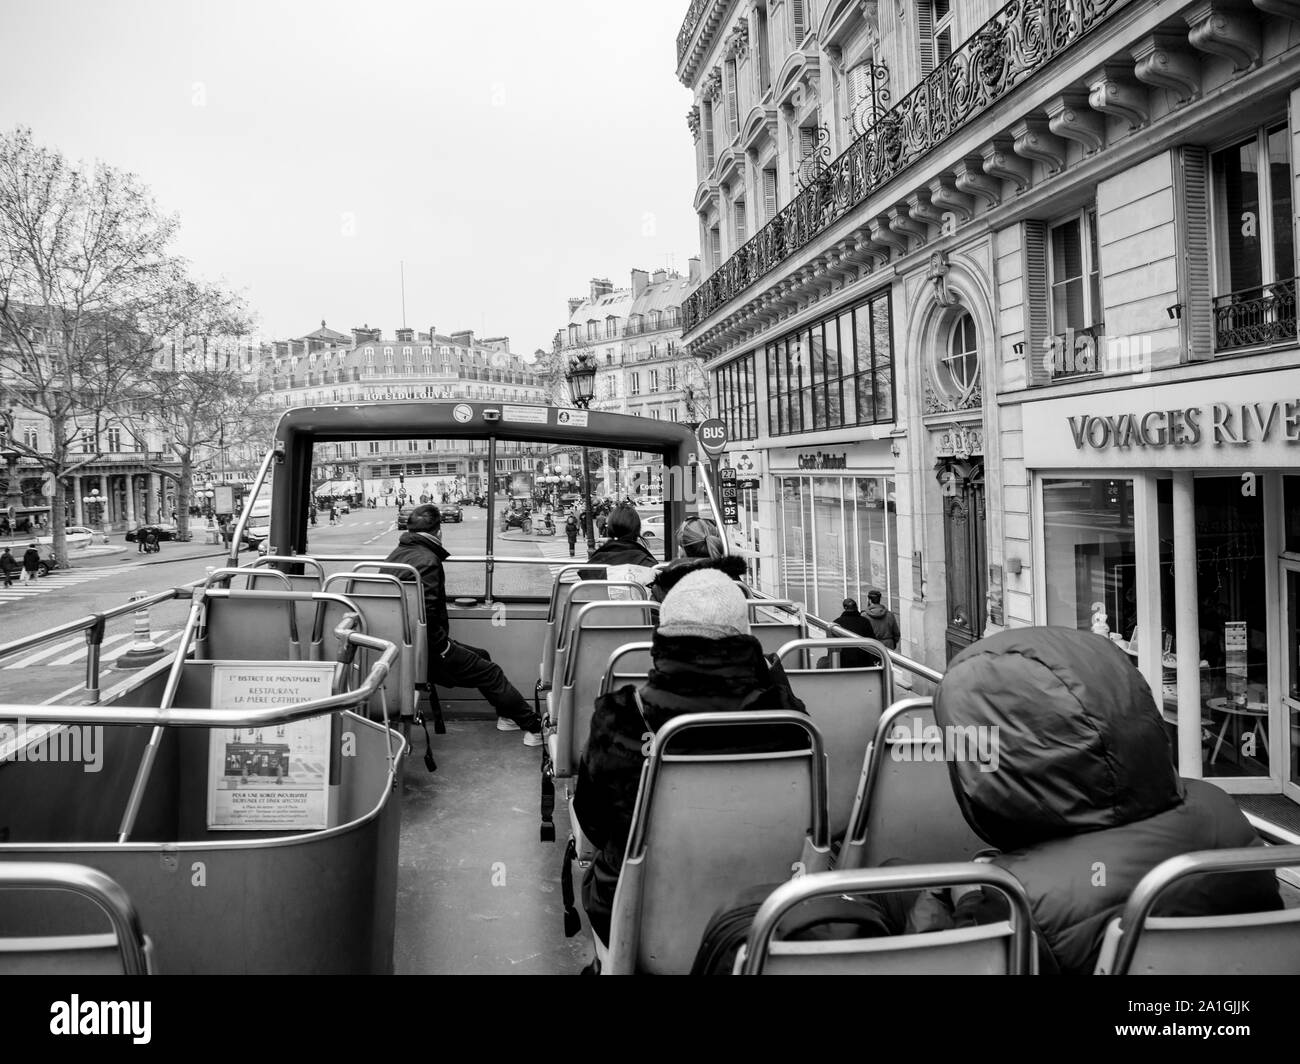 Paris, Frankreich - 20 Jan, 2019: Ansicht der Rückseite des Pa Pariser sightseeing tour bus mit Besucher Touristen bewundern die Straßen mit Autos und schöne Architektur Stockfoto